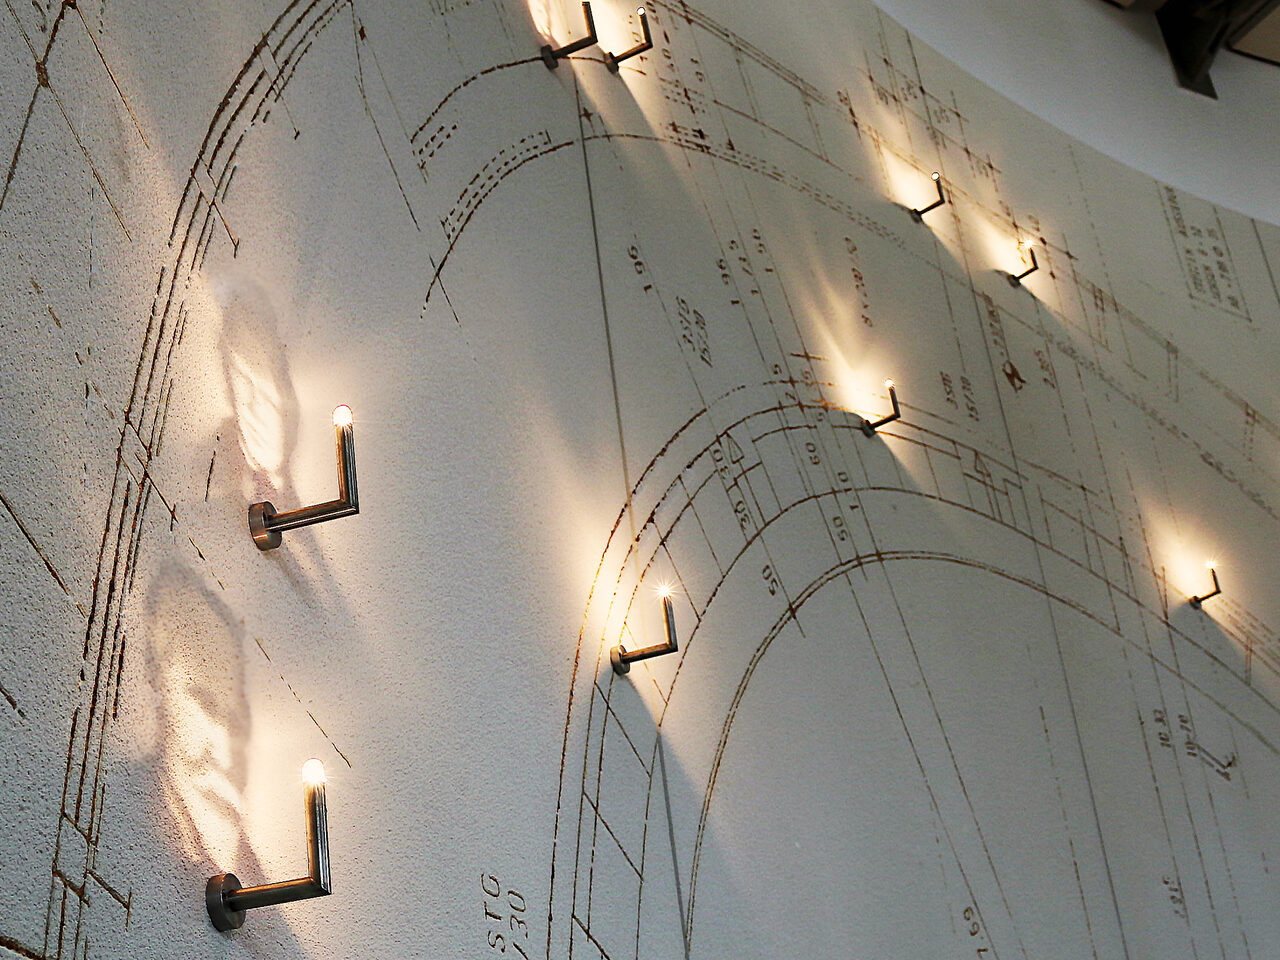 Kunstaktion "Einen Bogen spannen mit Leuchtenden Vorbildern" - Installation im Ratssaal des Rathauses